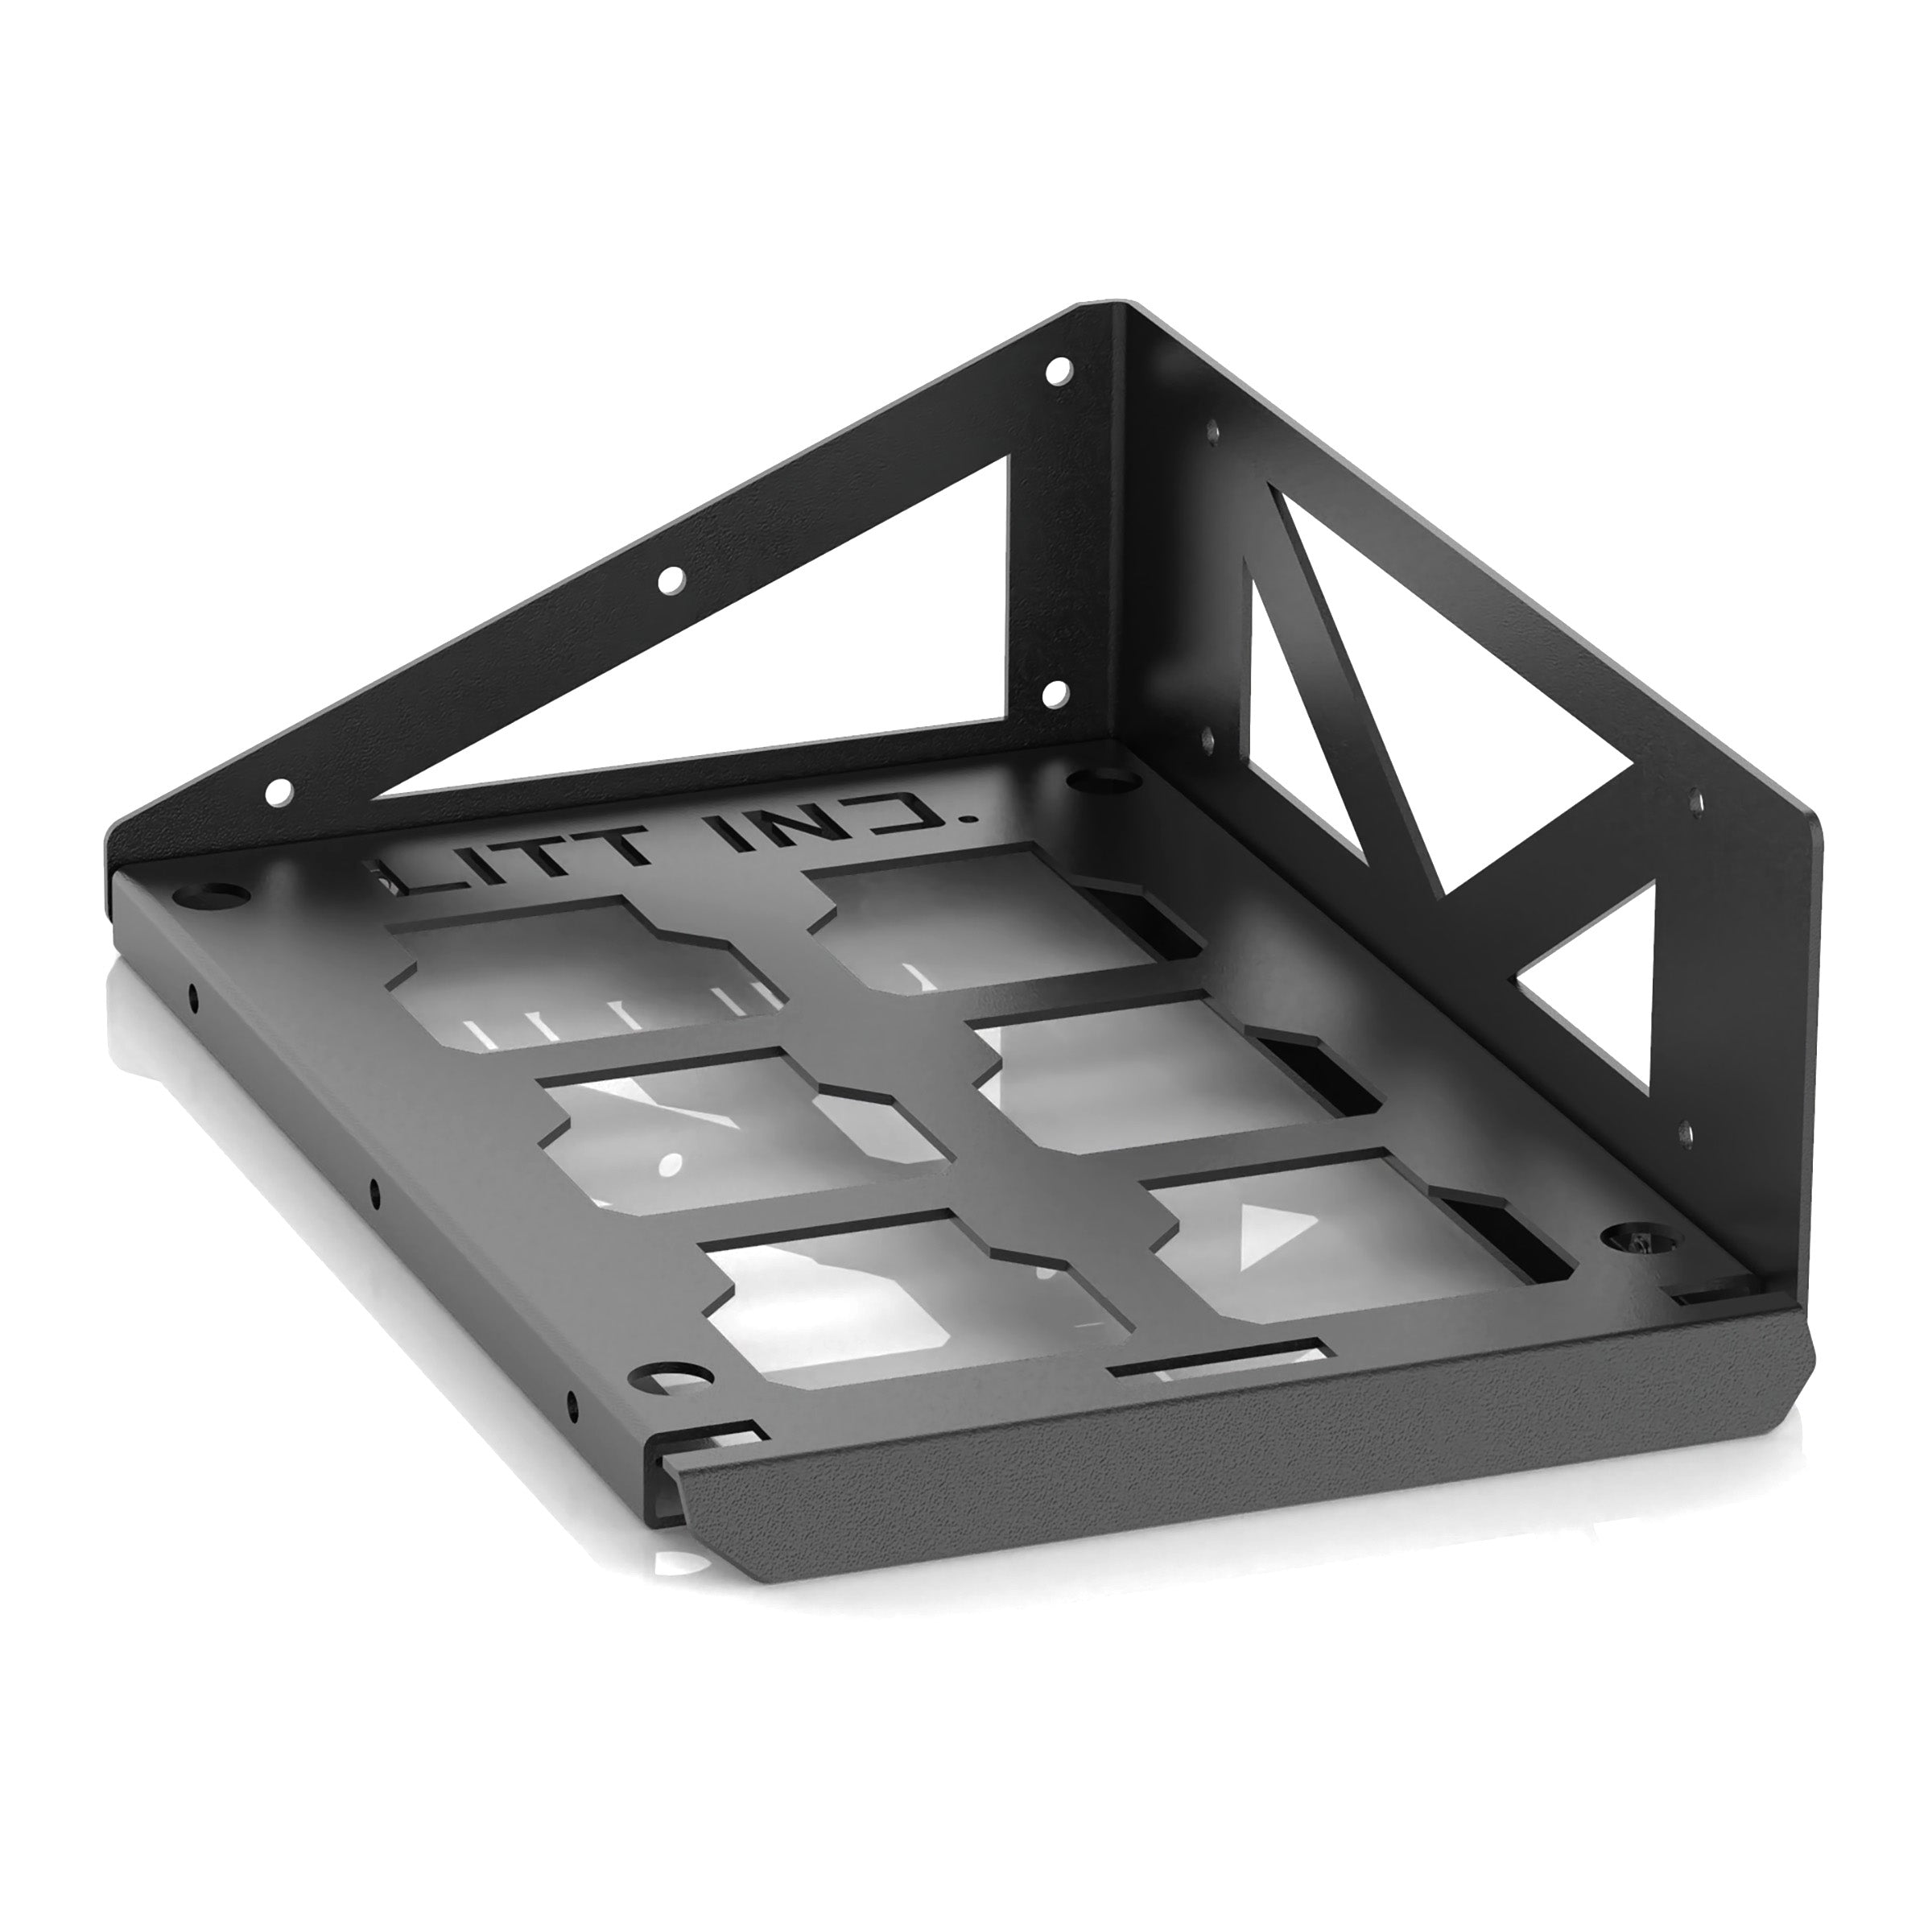 Litt Industries modular packout system shelf bracket